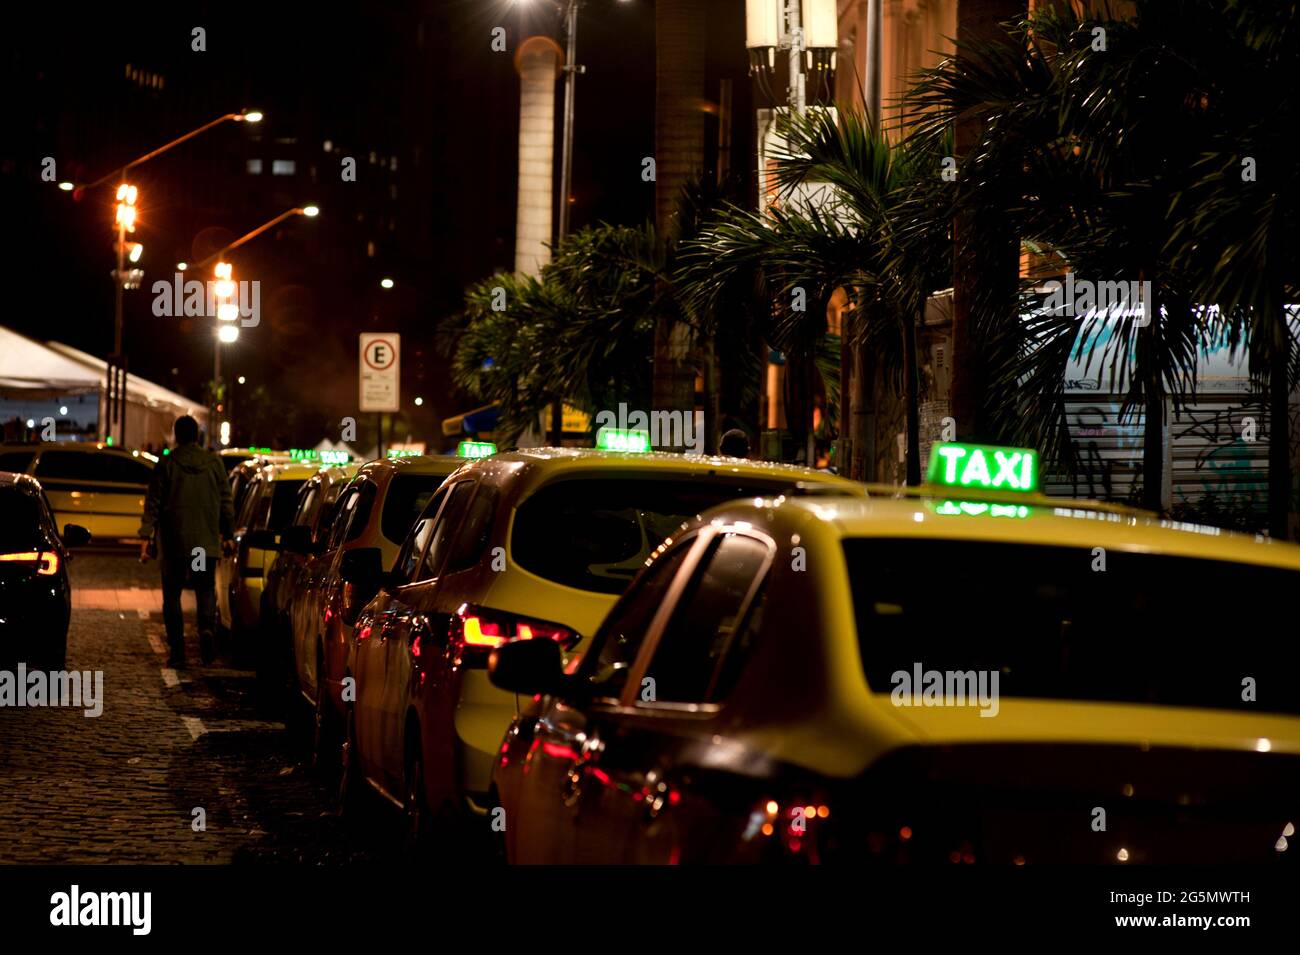 Südamerika, Brasilien: Nachts stehen Taxis an der Seite des Stadttheaters in der Innenstadt von Rio de Janeiro an. Beleuchtete Taxistafeln. Taxis parkten in einer Reihe. Stockfoto